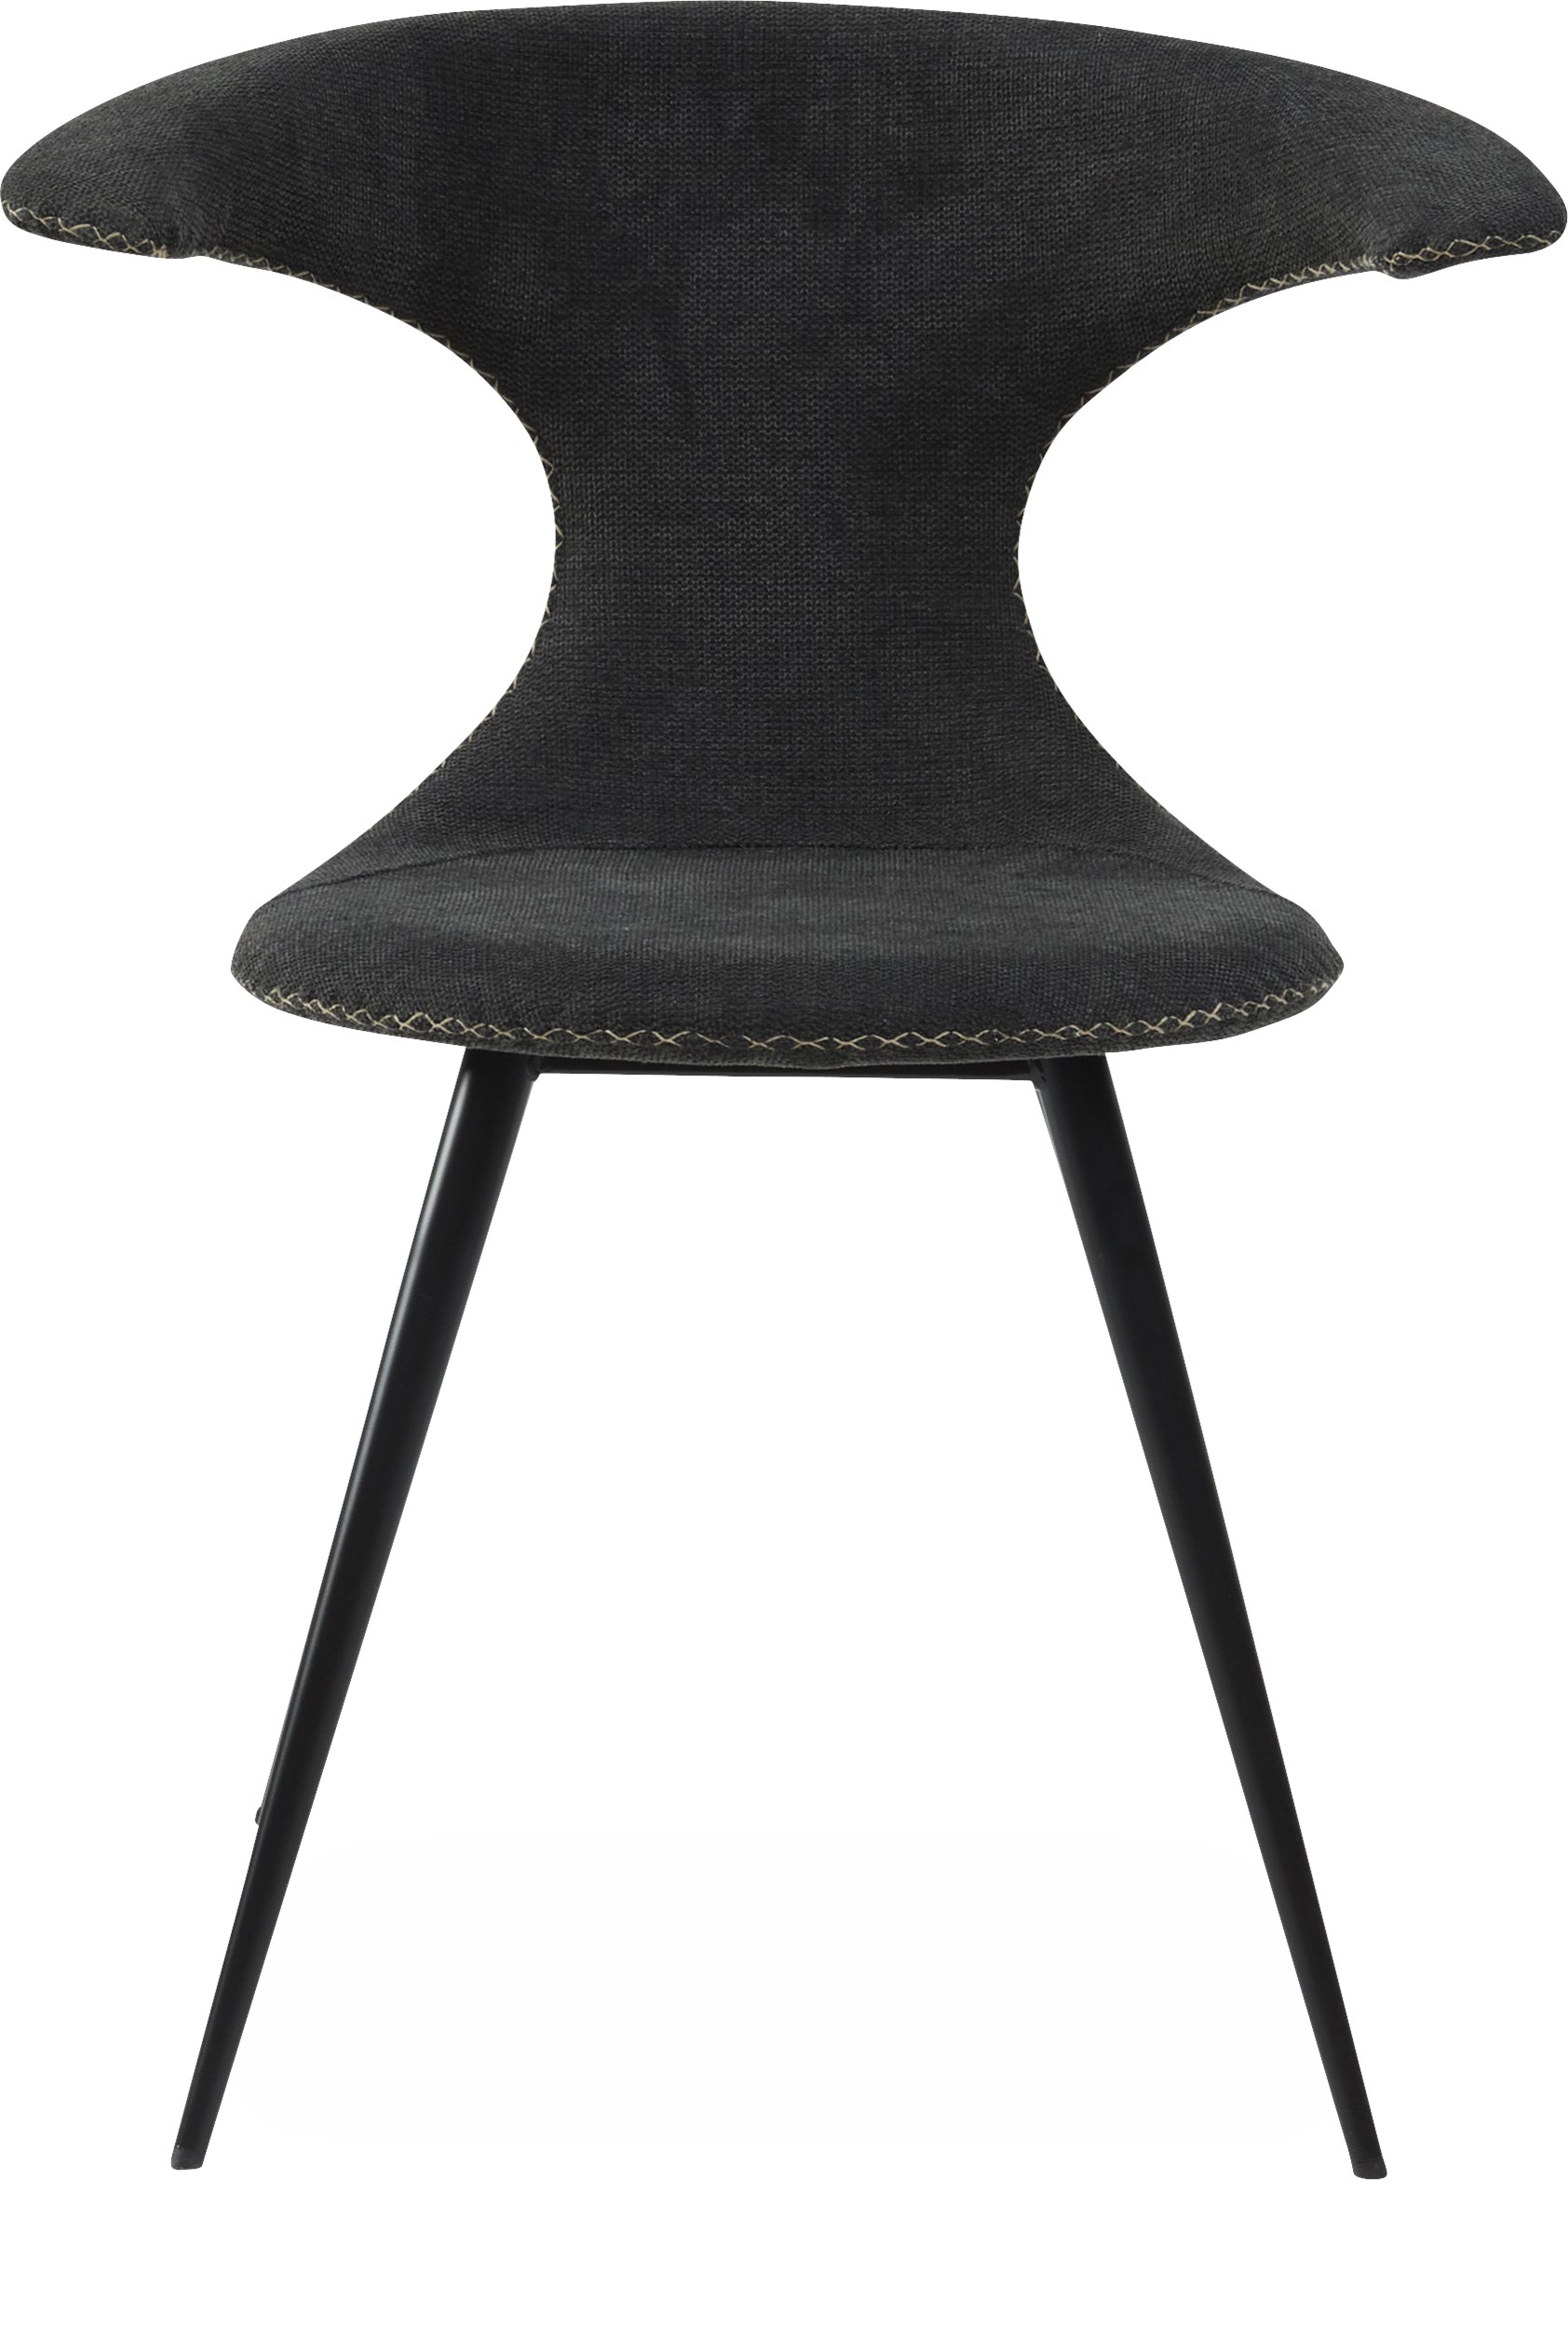 Flaire Spisebordsstol - Sæde i crow black stof, med kontrastsyninger og runde ben i sortlakeret metal